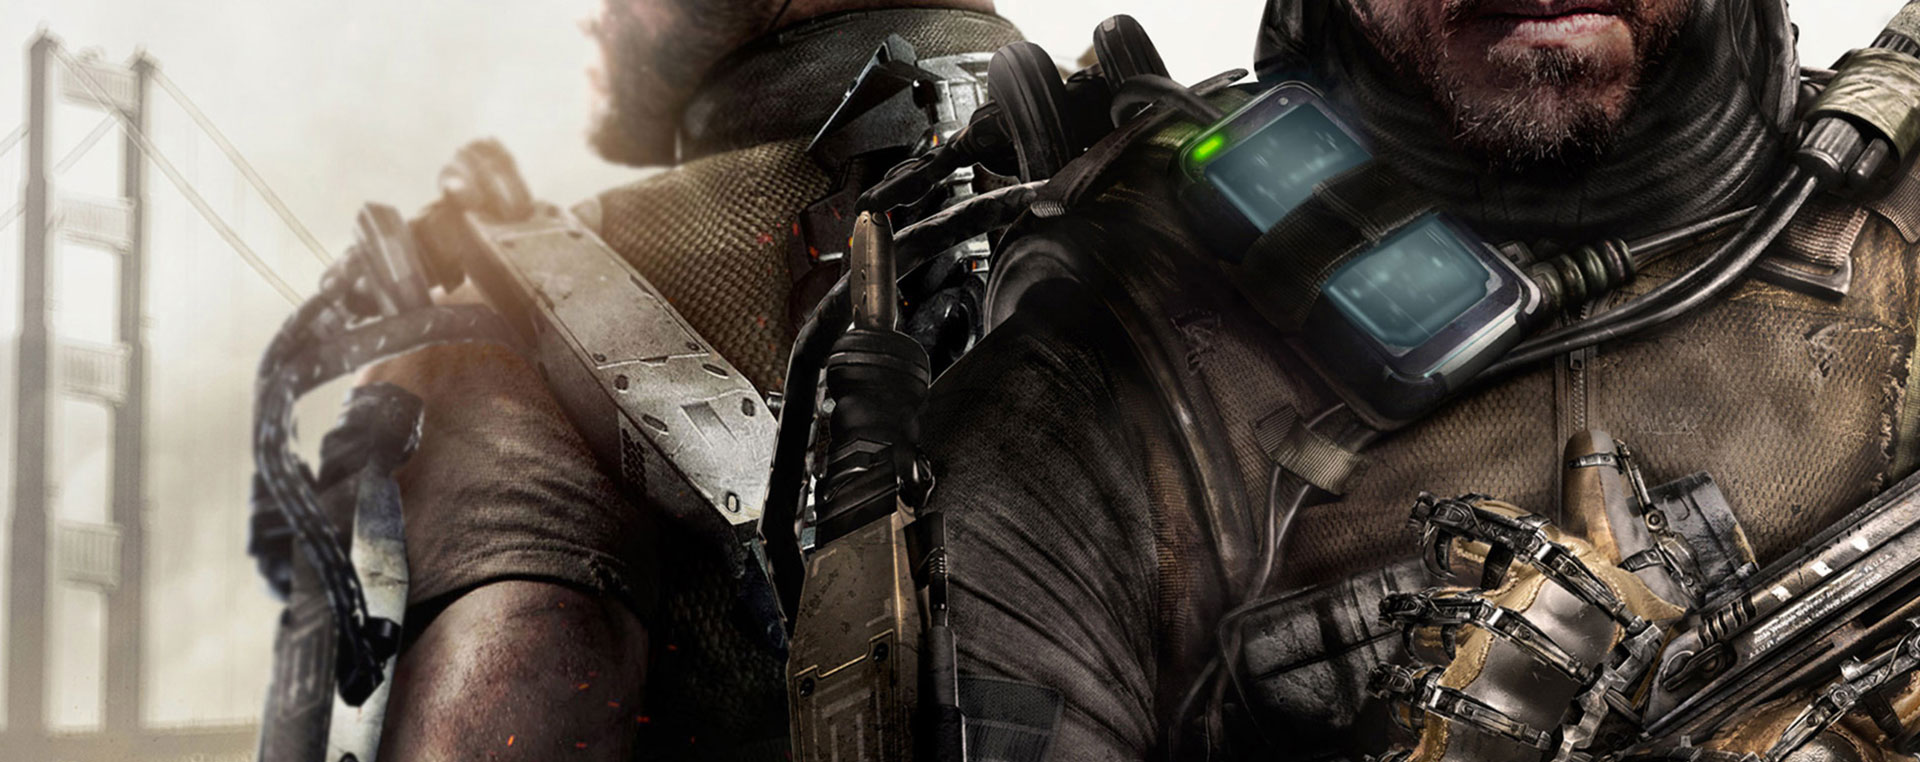  Call of Duty Advanced Warfare - Day Zero Edition